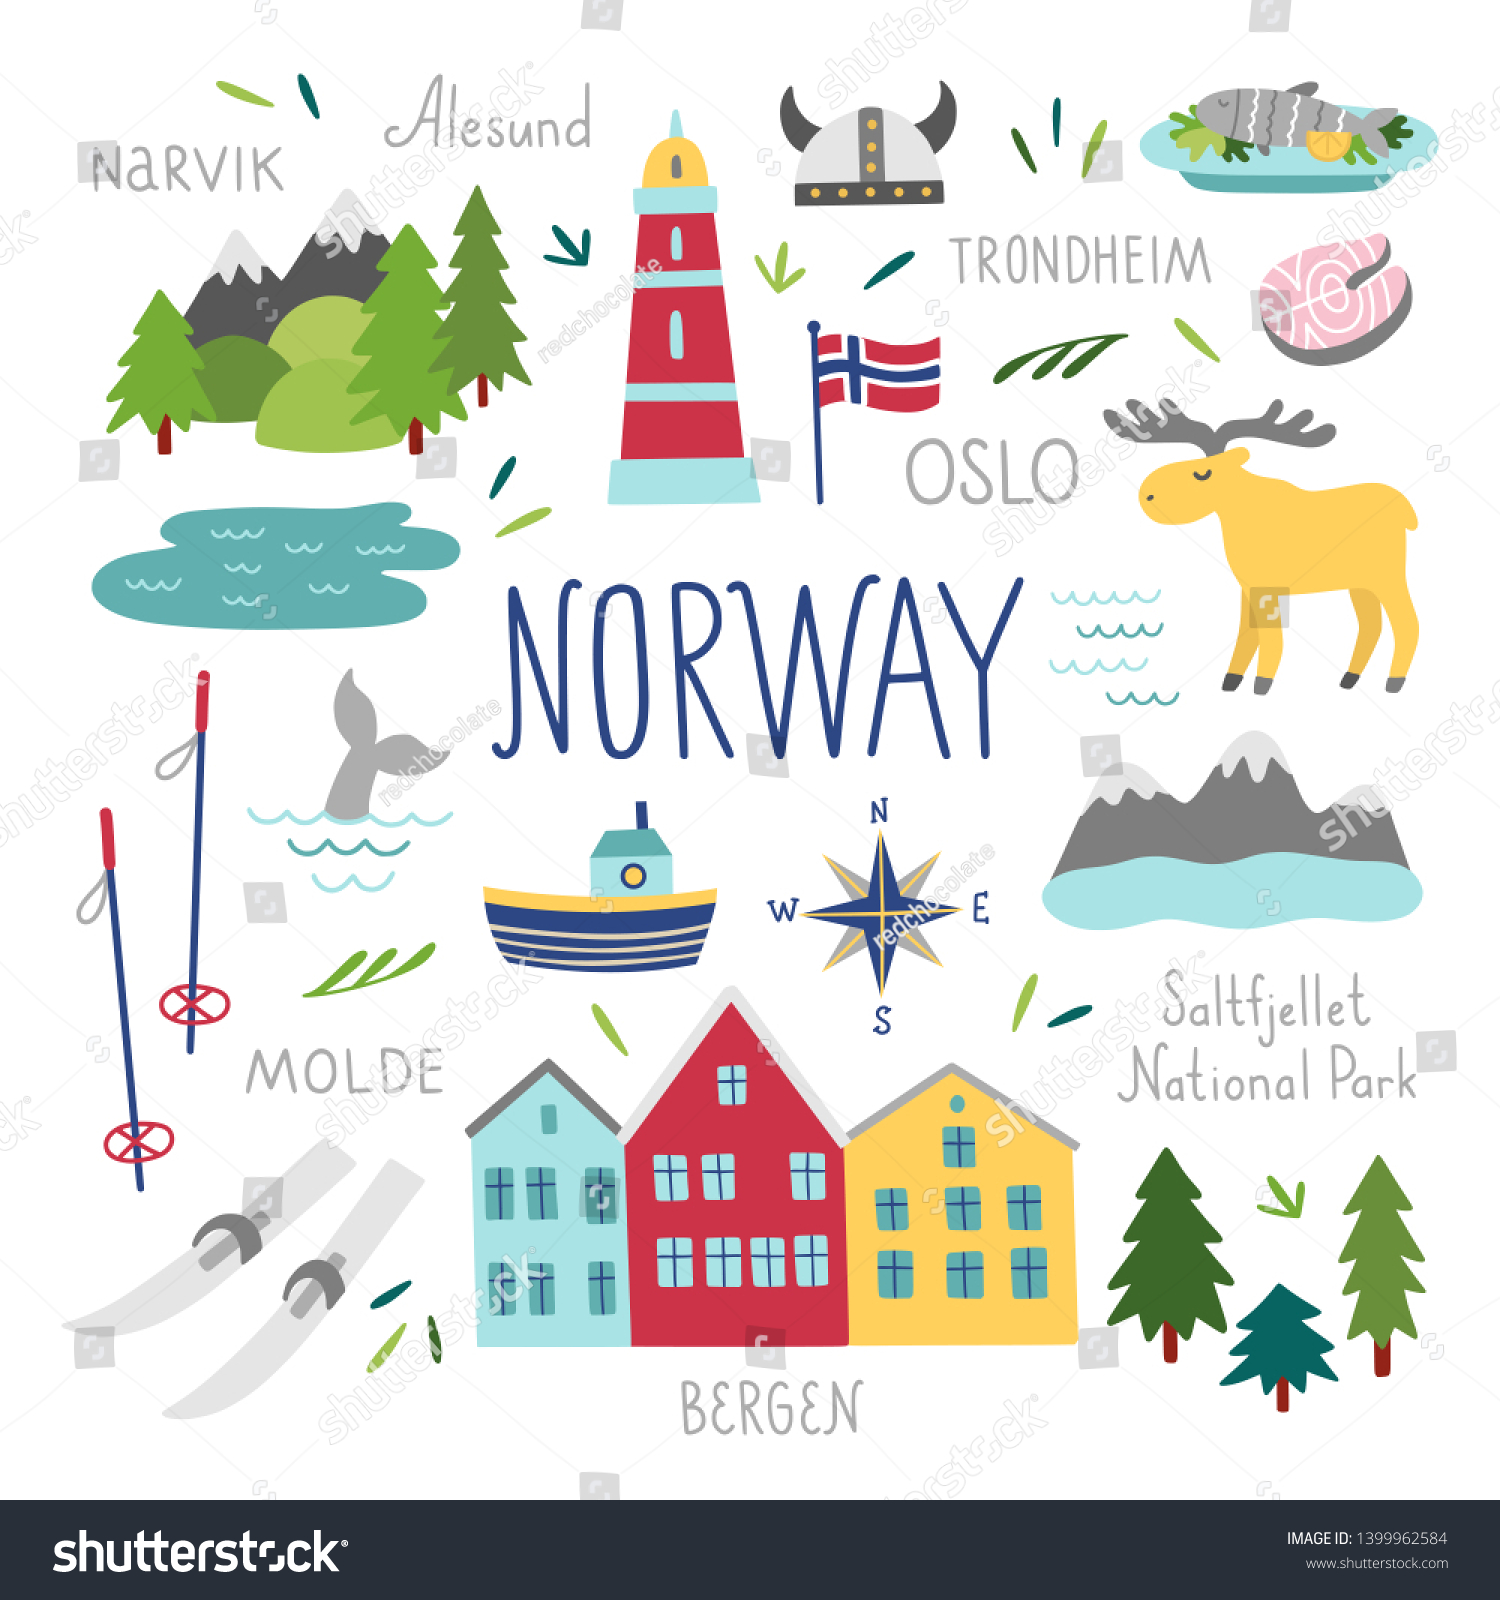 Норвегия векторные иллюстрации